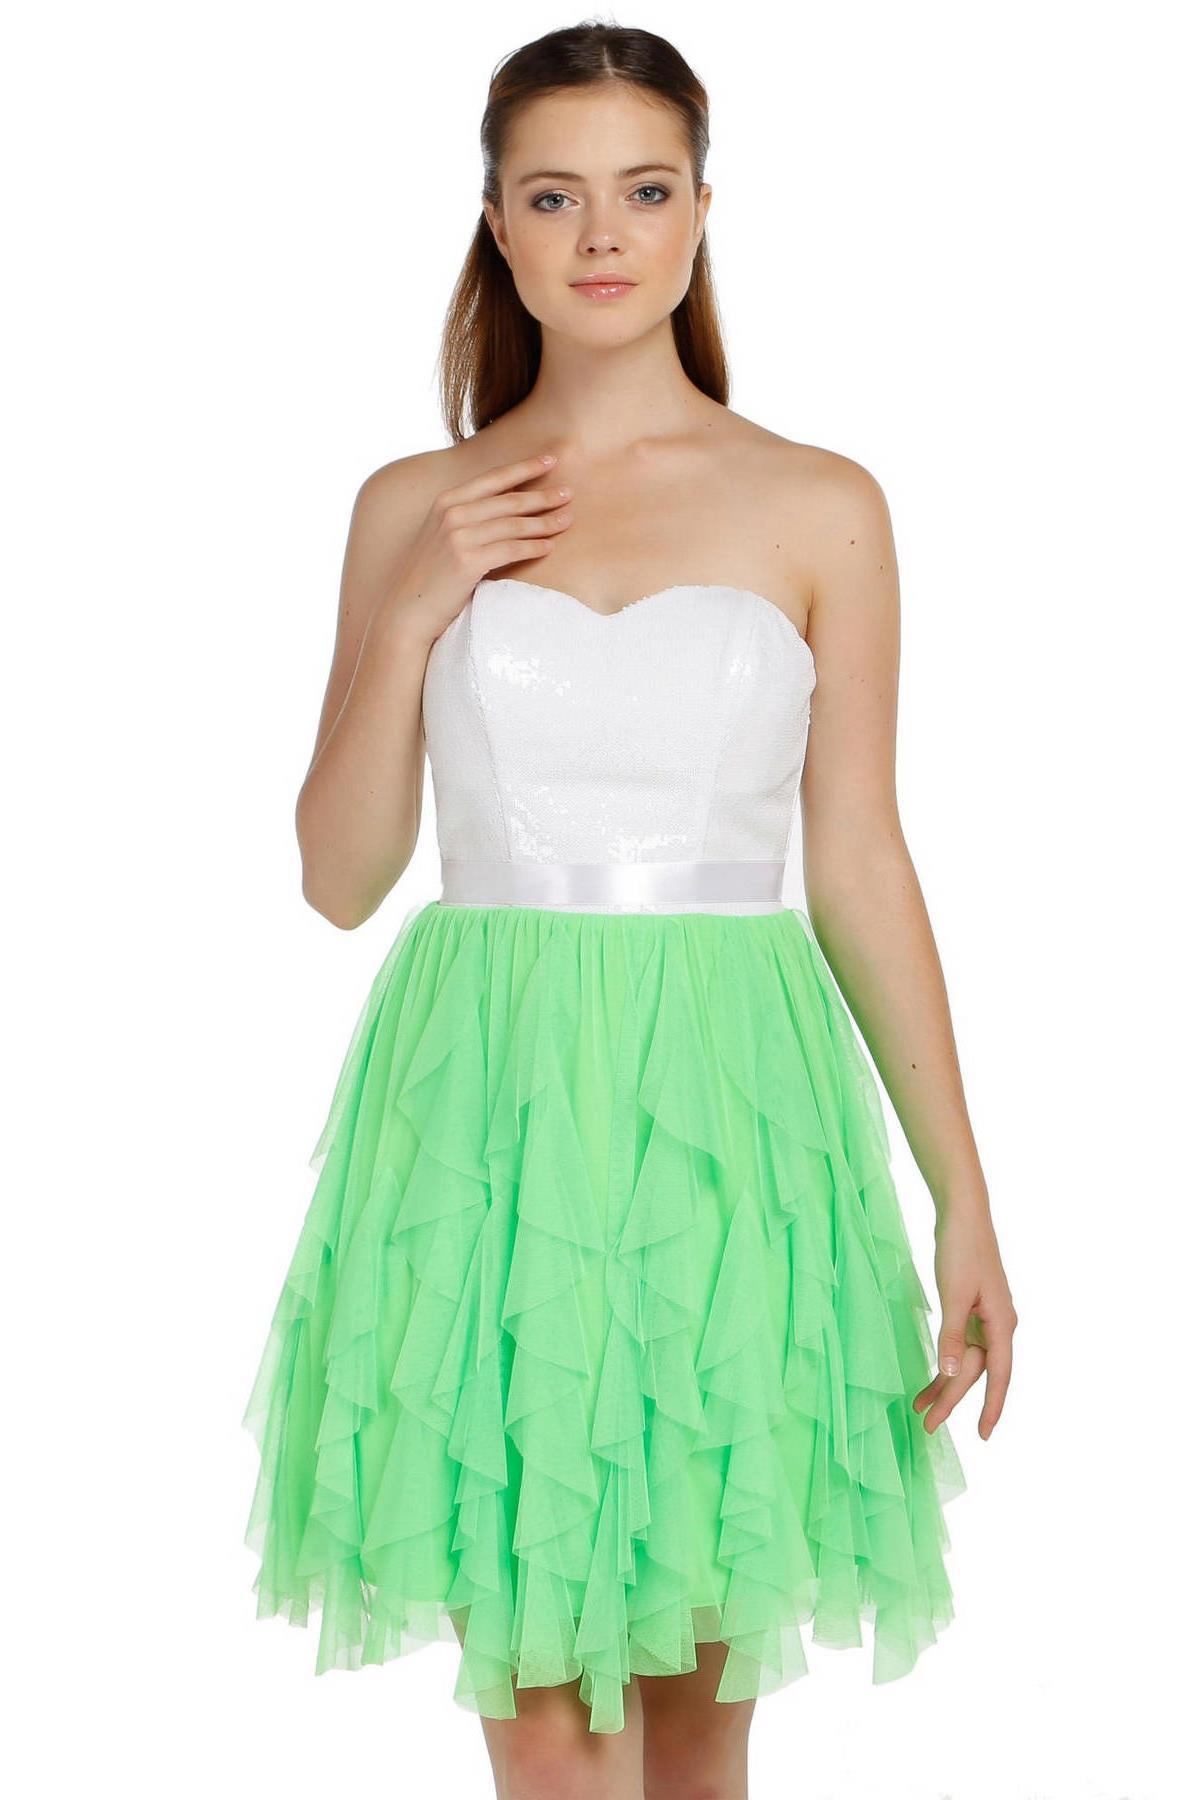 Fierte Kadın Abiye Elbise Azr4423 Straplez Kısa Şifon Fuşya Yeşil Abiye Elbise